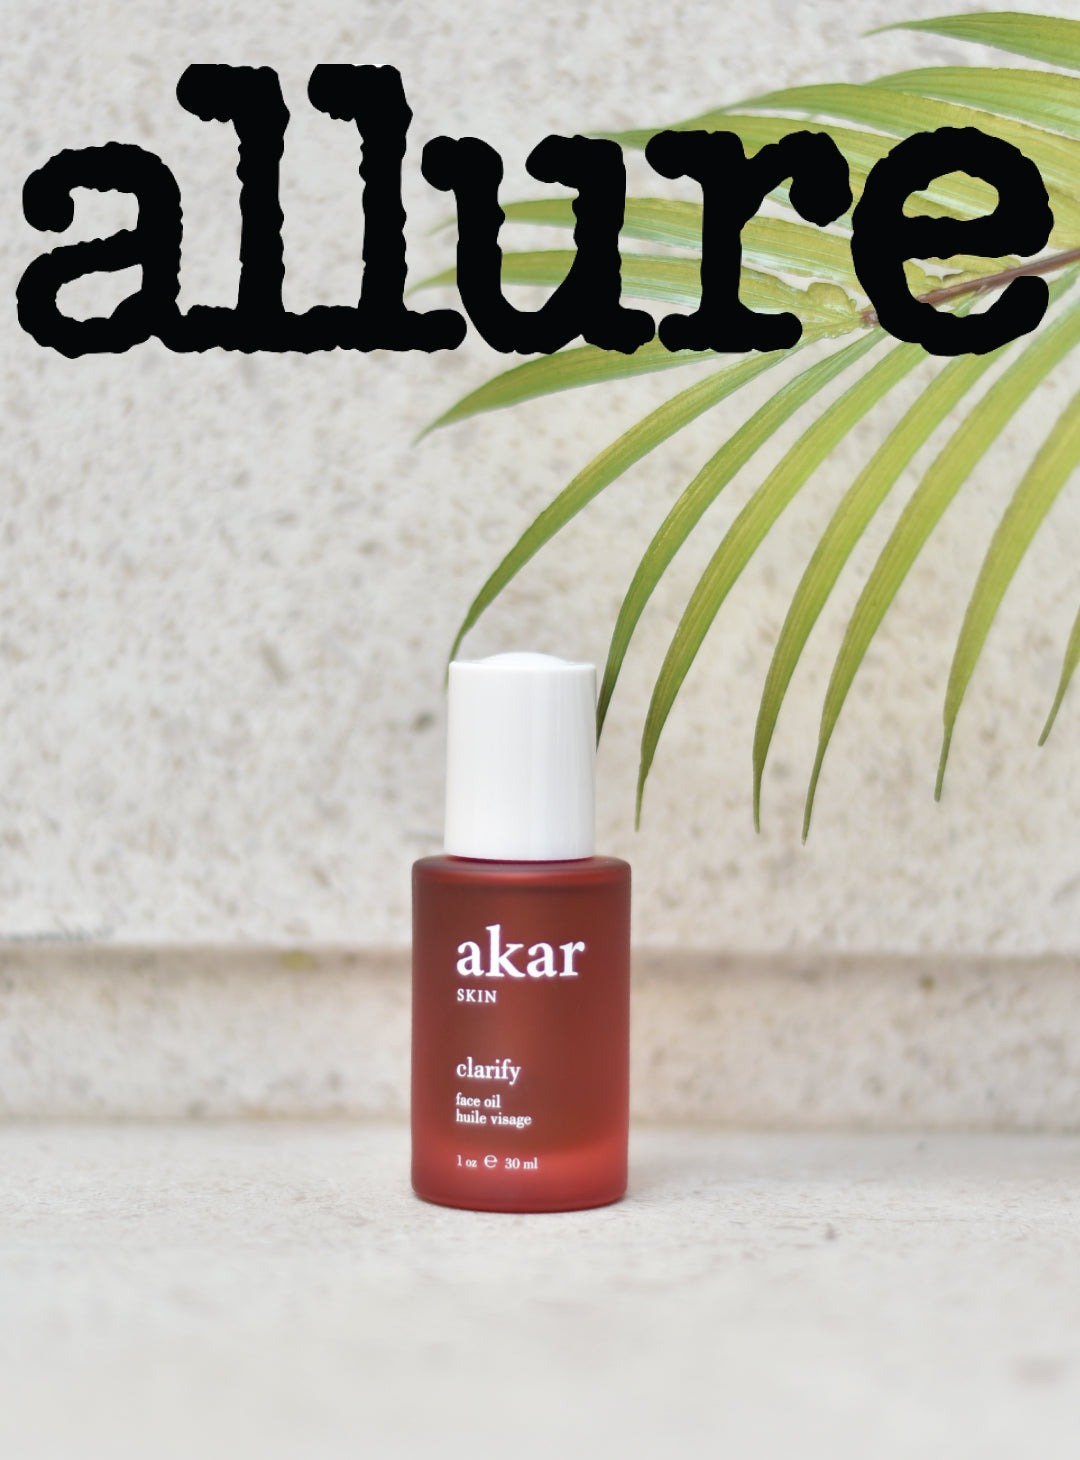 clarify face oil, red bottle, allure, leaf, akar